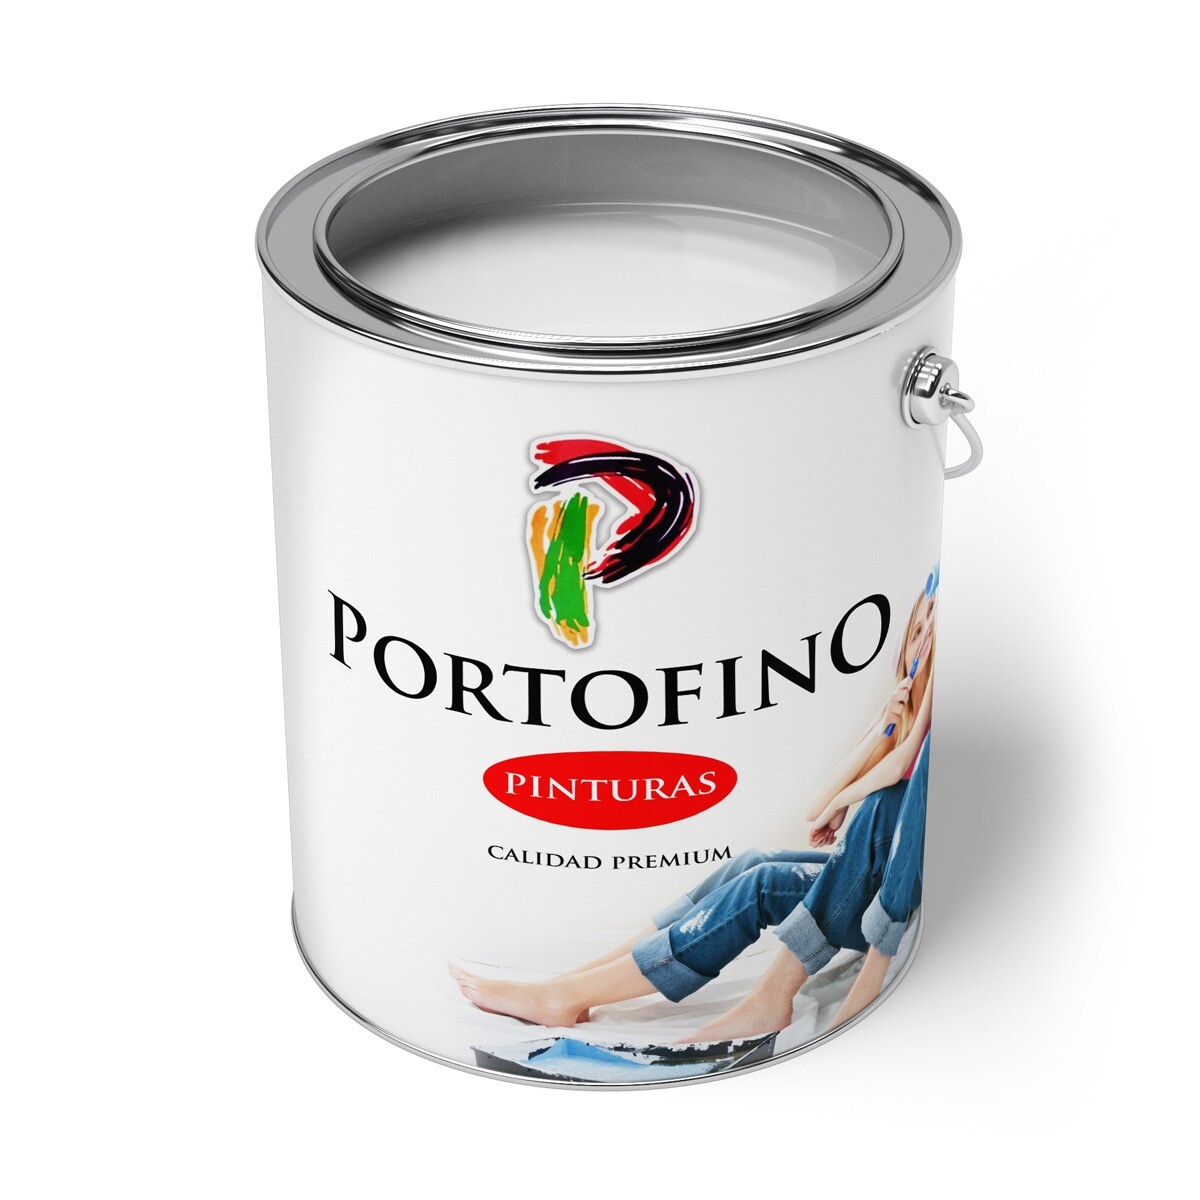 Convertilux Portofino 1 Lt. Vde.italia 